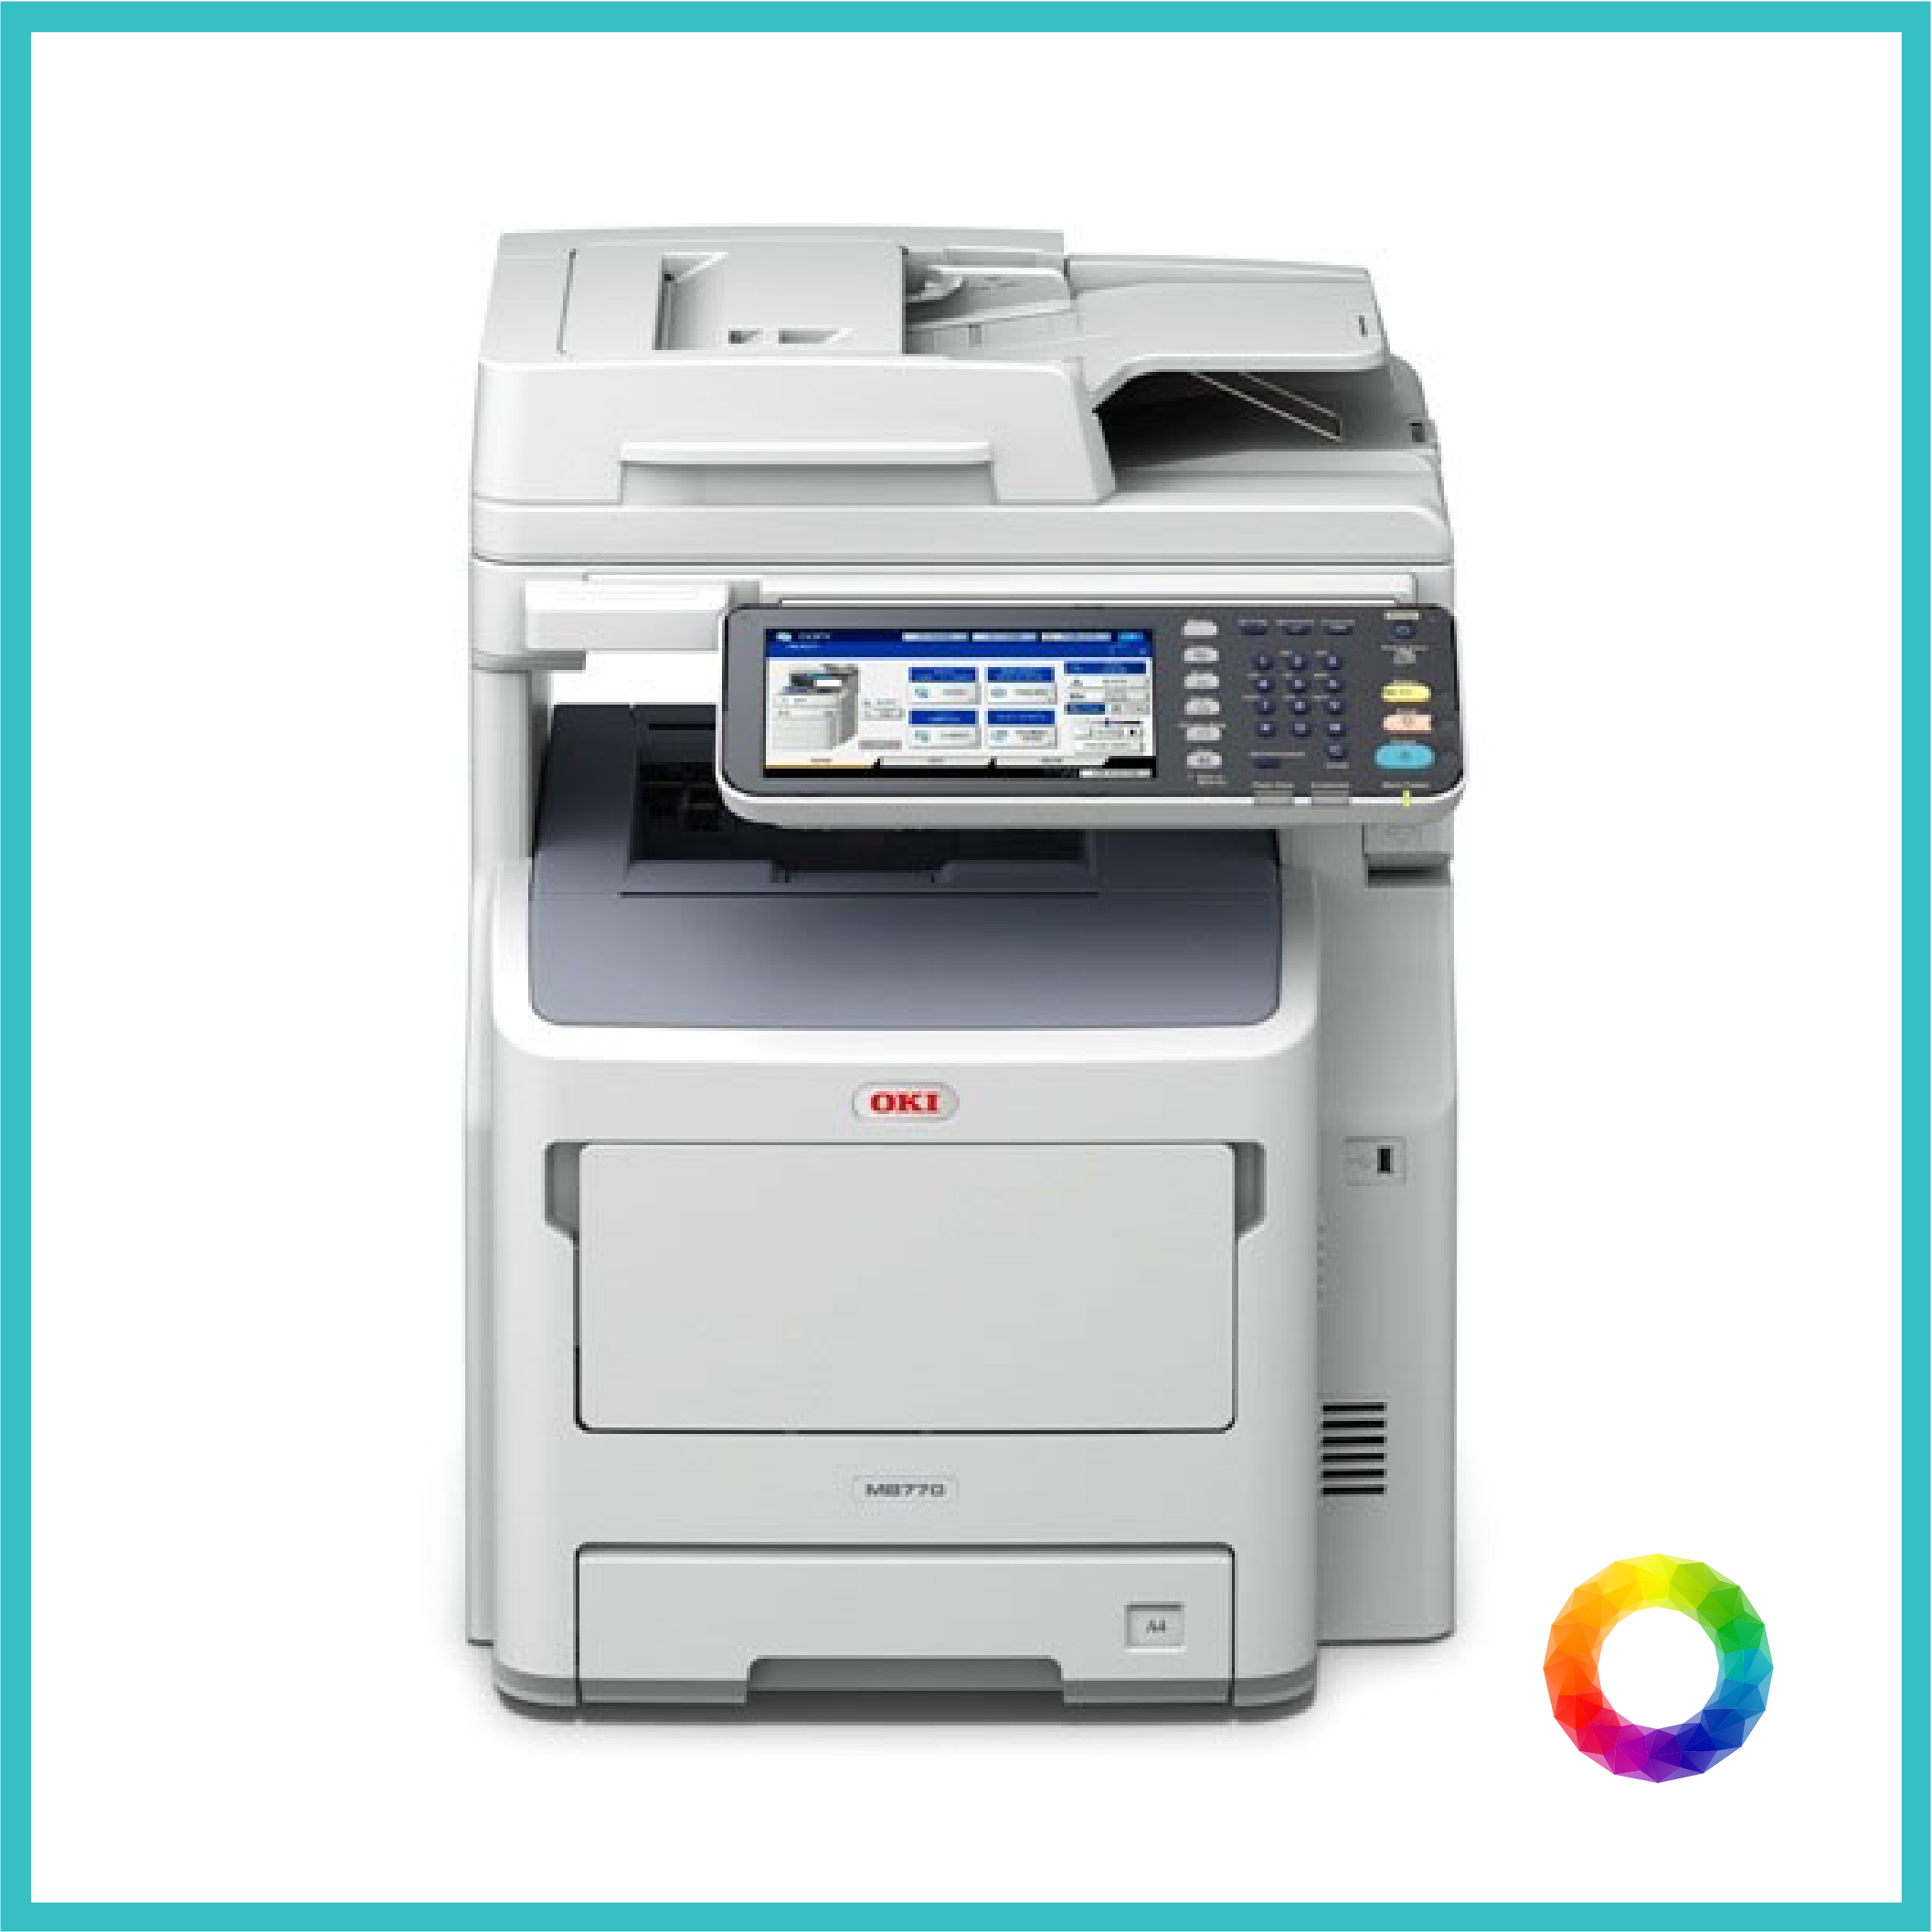 multipurpose OKI ES7470 photocopier